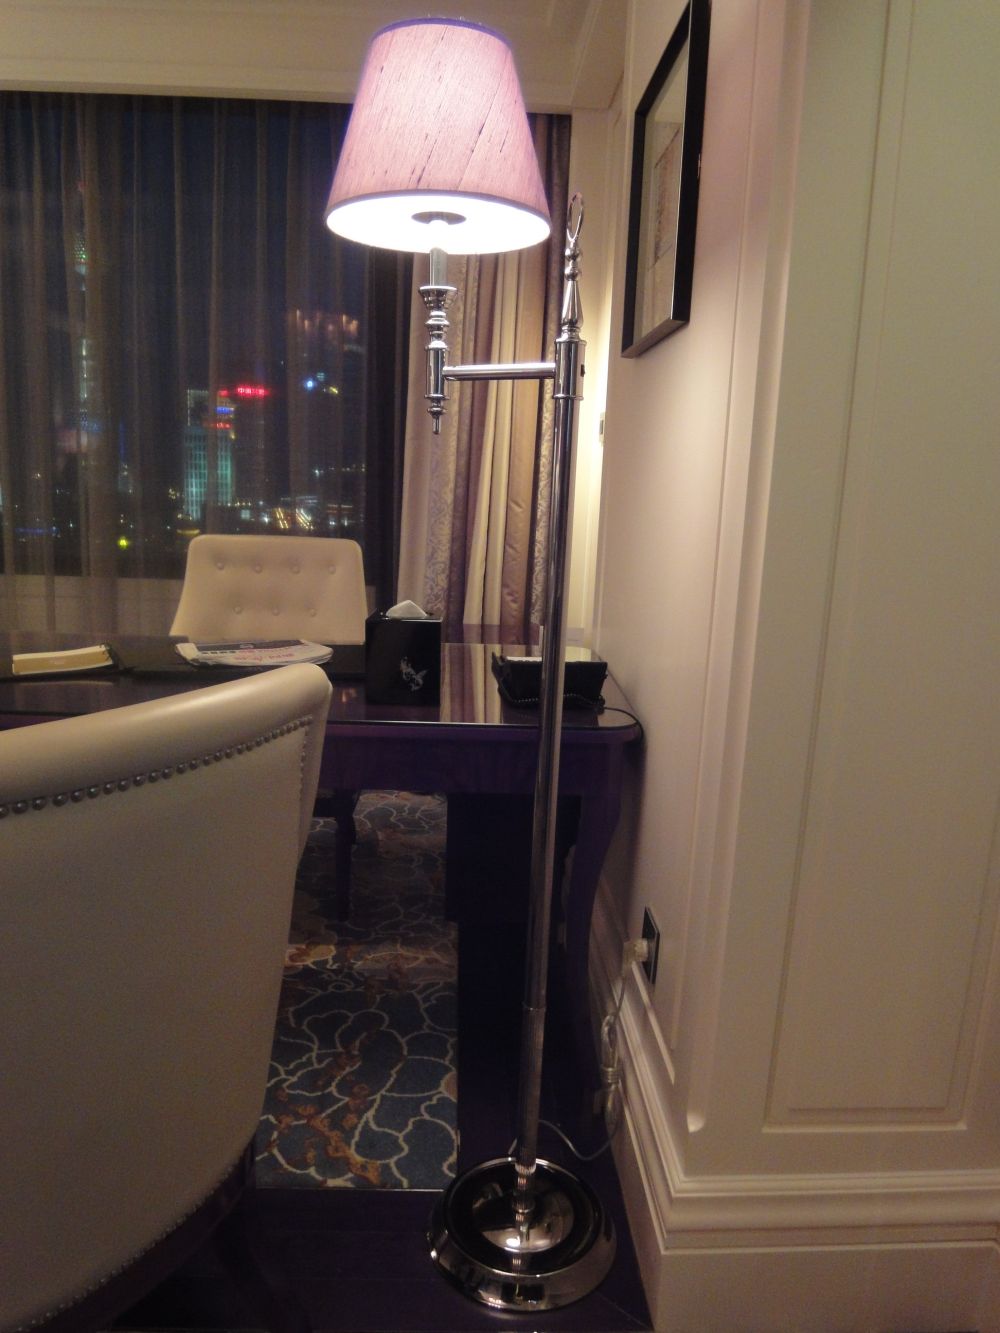 上海华尔道夫酒店(The Waldorf Astoria OnTheBund)(HBA)10.9第10页更新_DSC04310.jpg